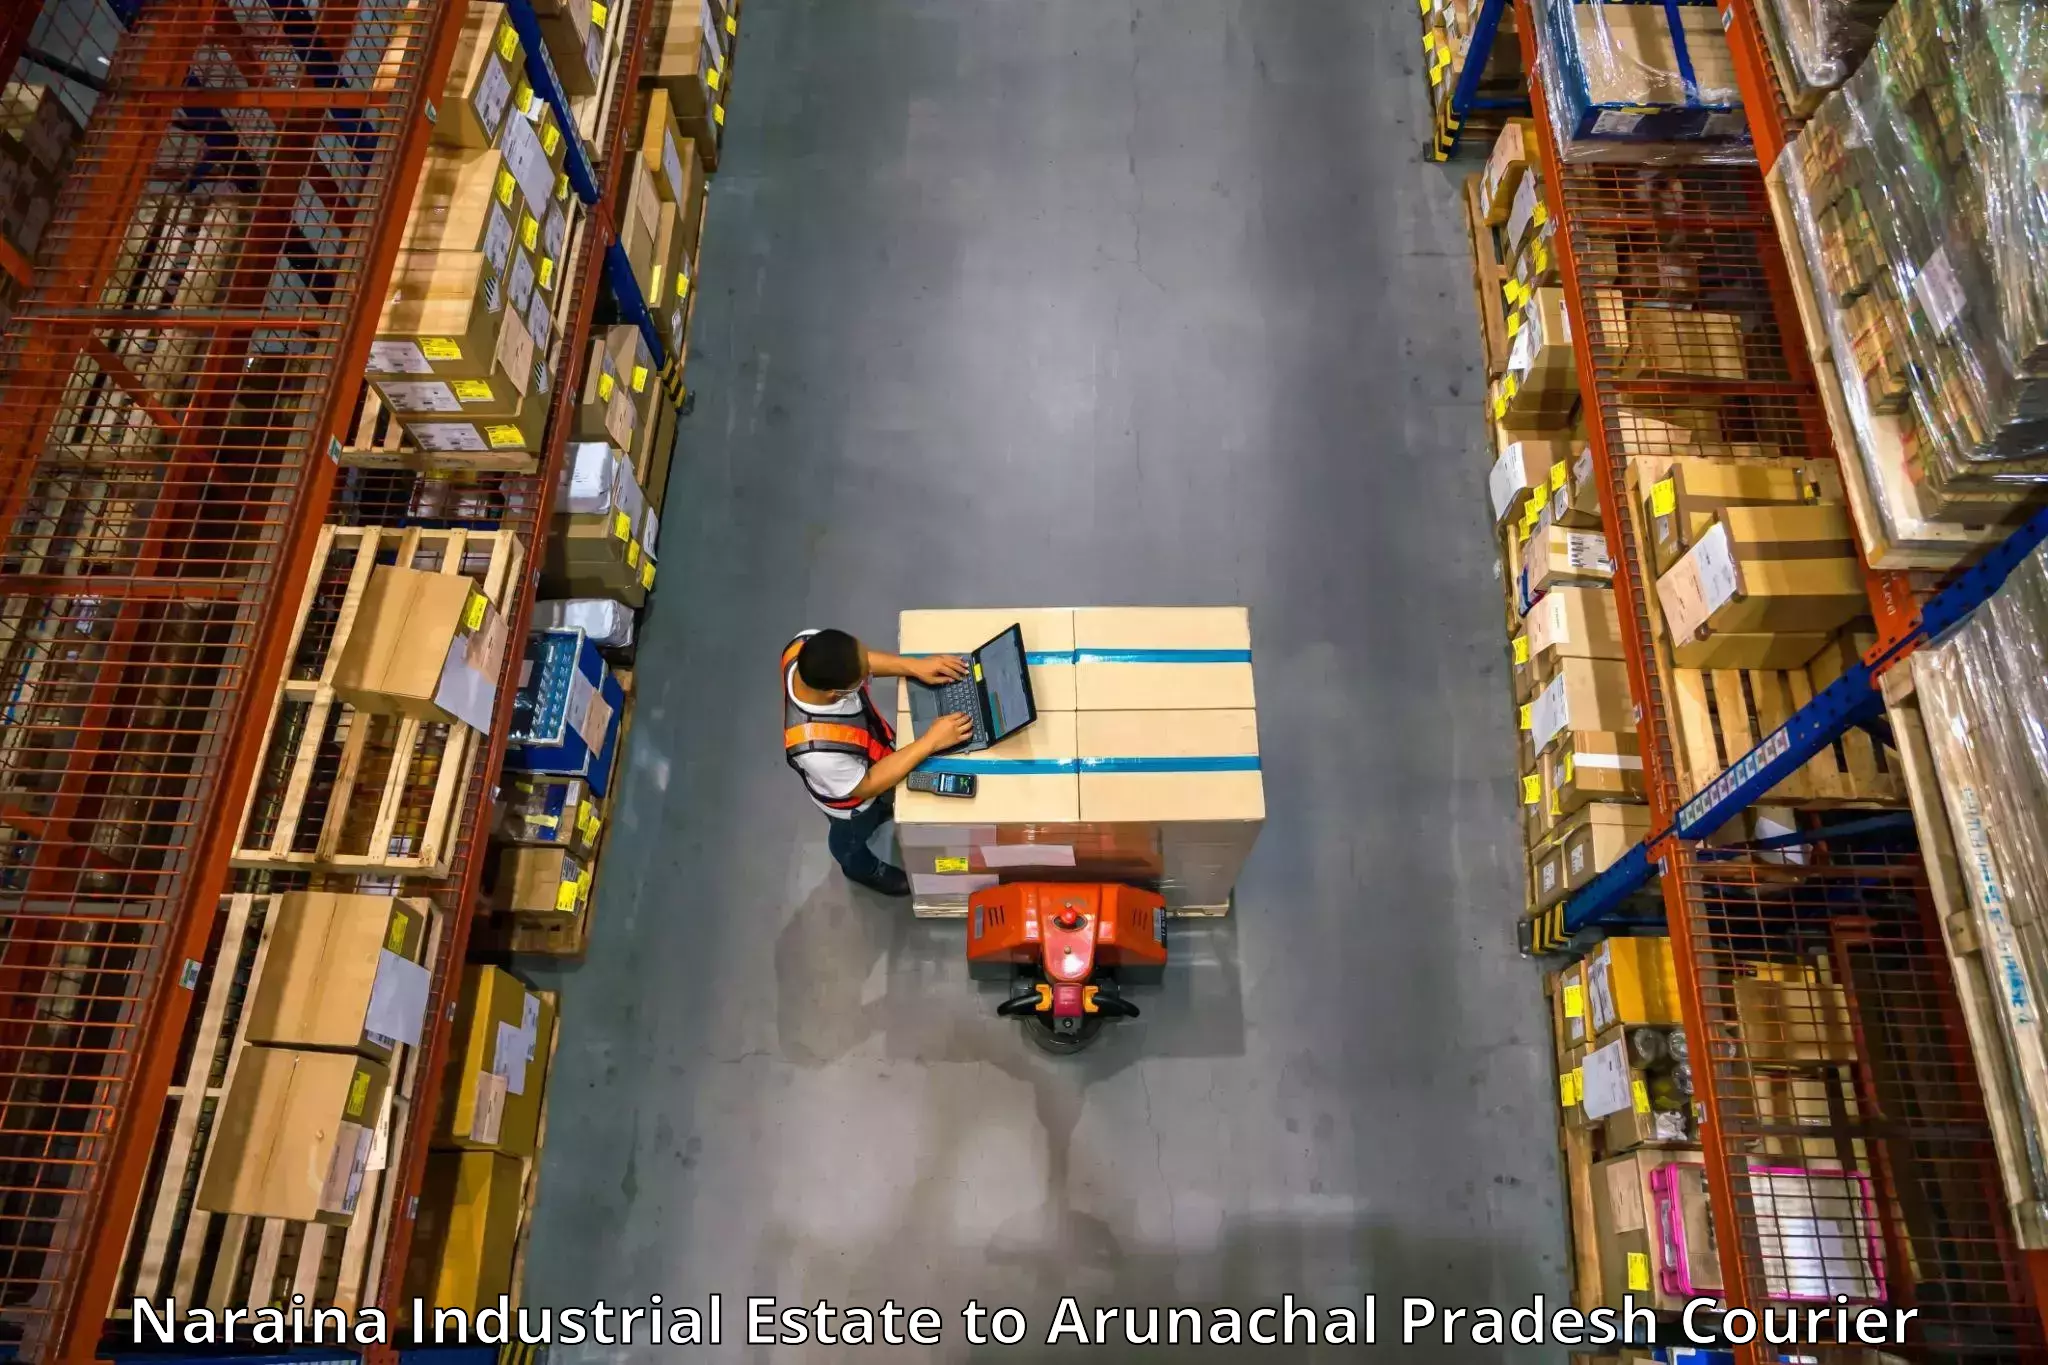 Stress-free furniture moving Naraina Industrial Estate to Arunachal Pradesh